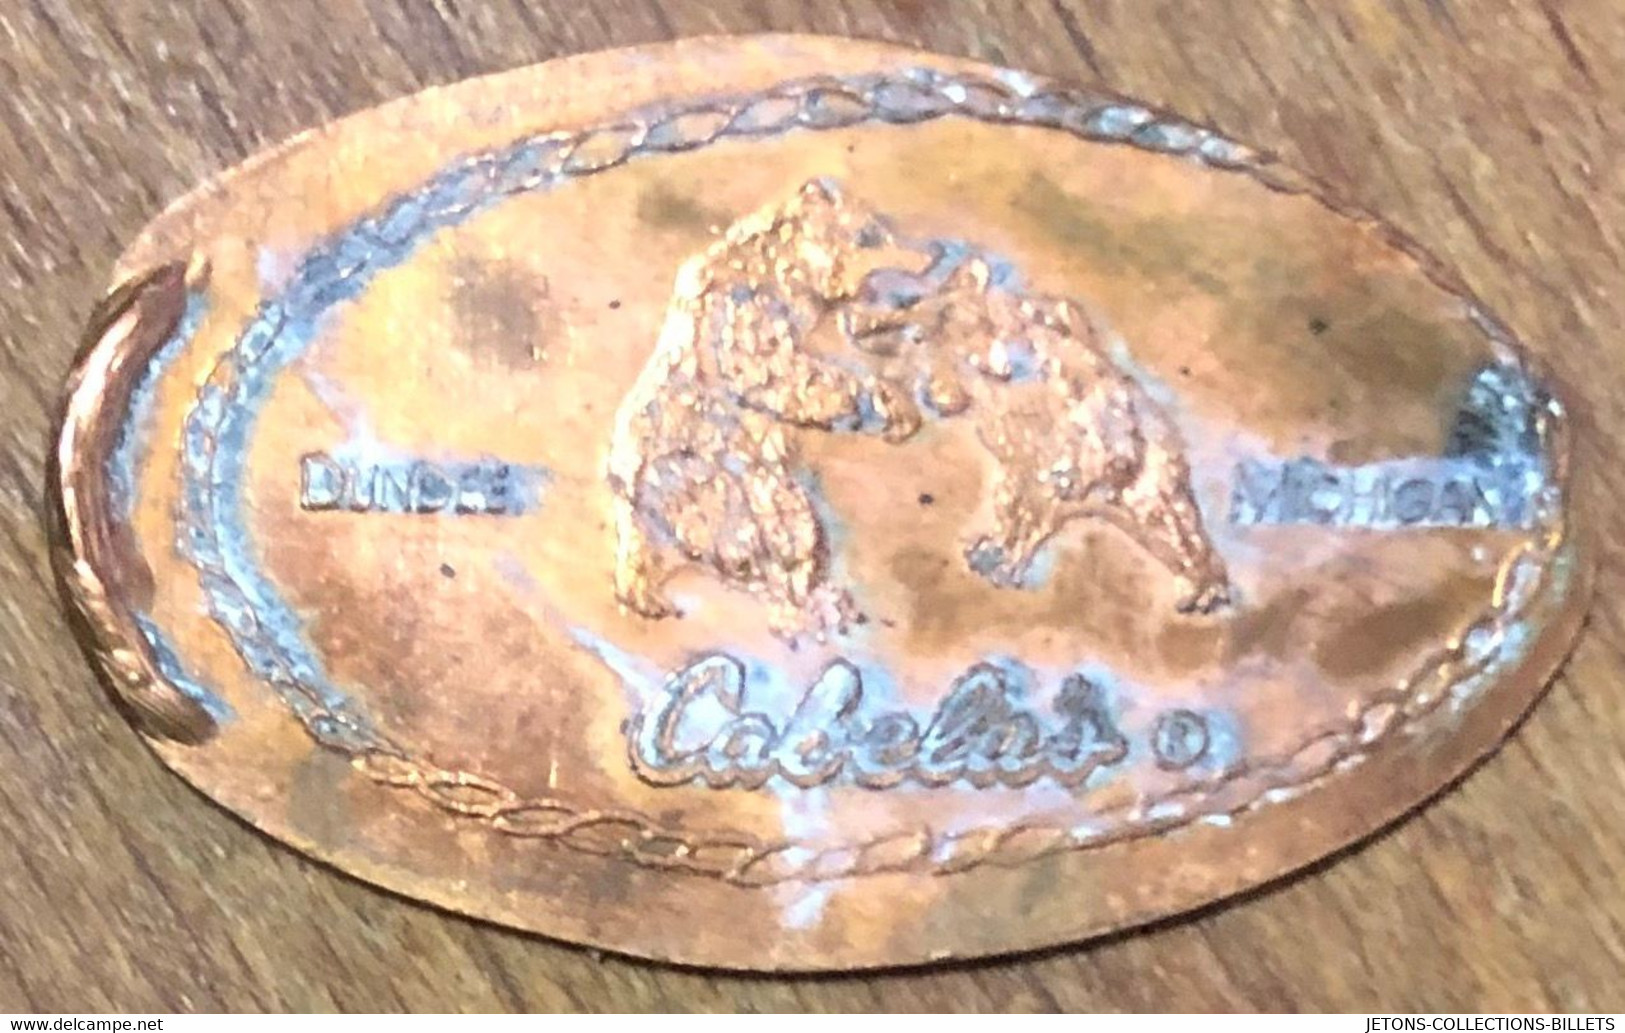 ÉTATS-UNIS USA CABELAS DUNDEE MICHIGAN PIÈCE ÉCRASÉE PENNY ELONGATED COIN MEDAILLE TOURISTIQUE MEDALS TOKENS - Souvenir-Medaille (elongated Coins)